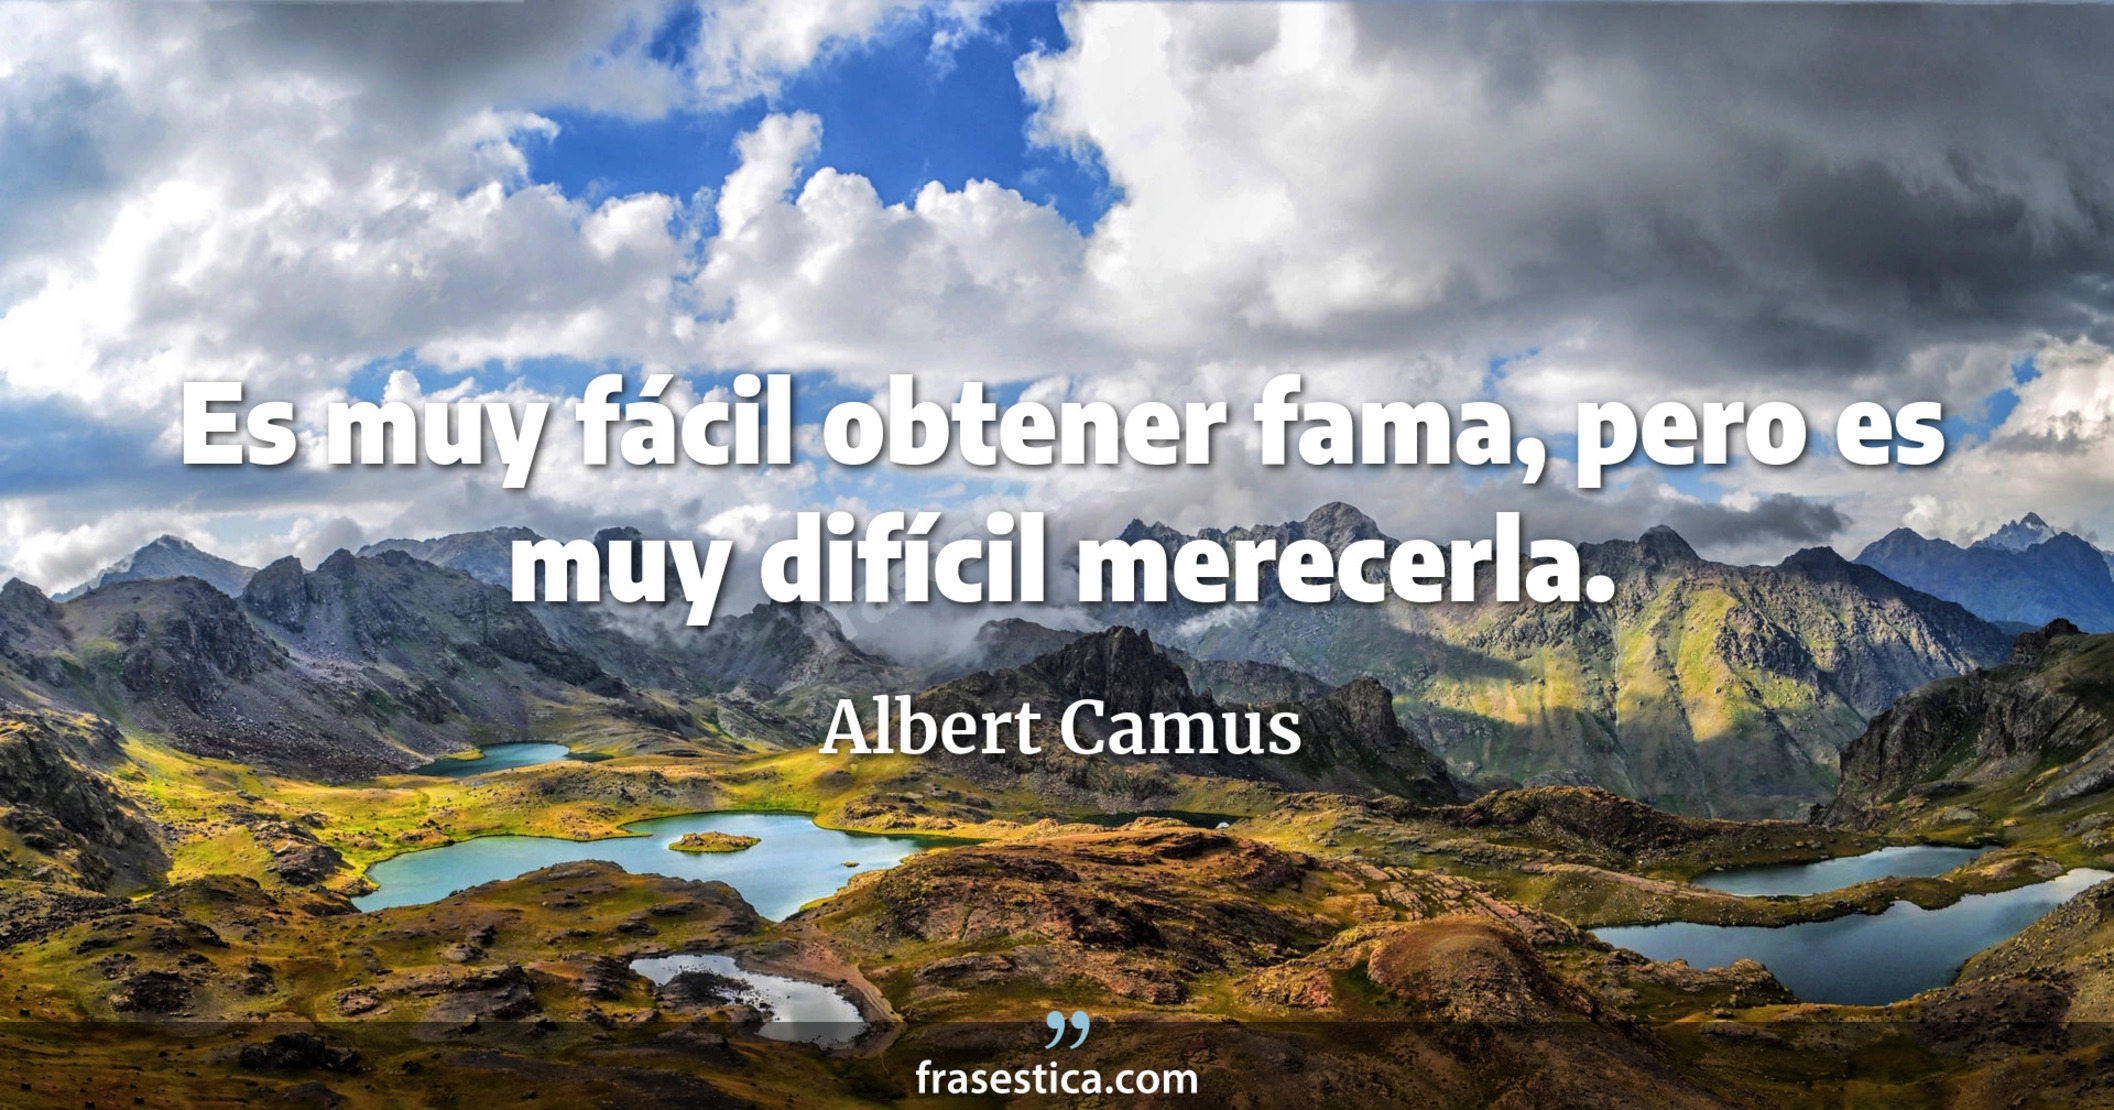 Es muy fácil obtener fama, pero es muy difícil merecerla. - Albert Camus